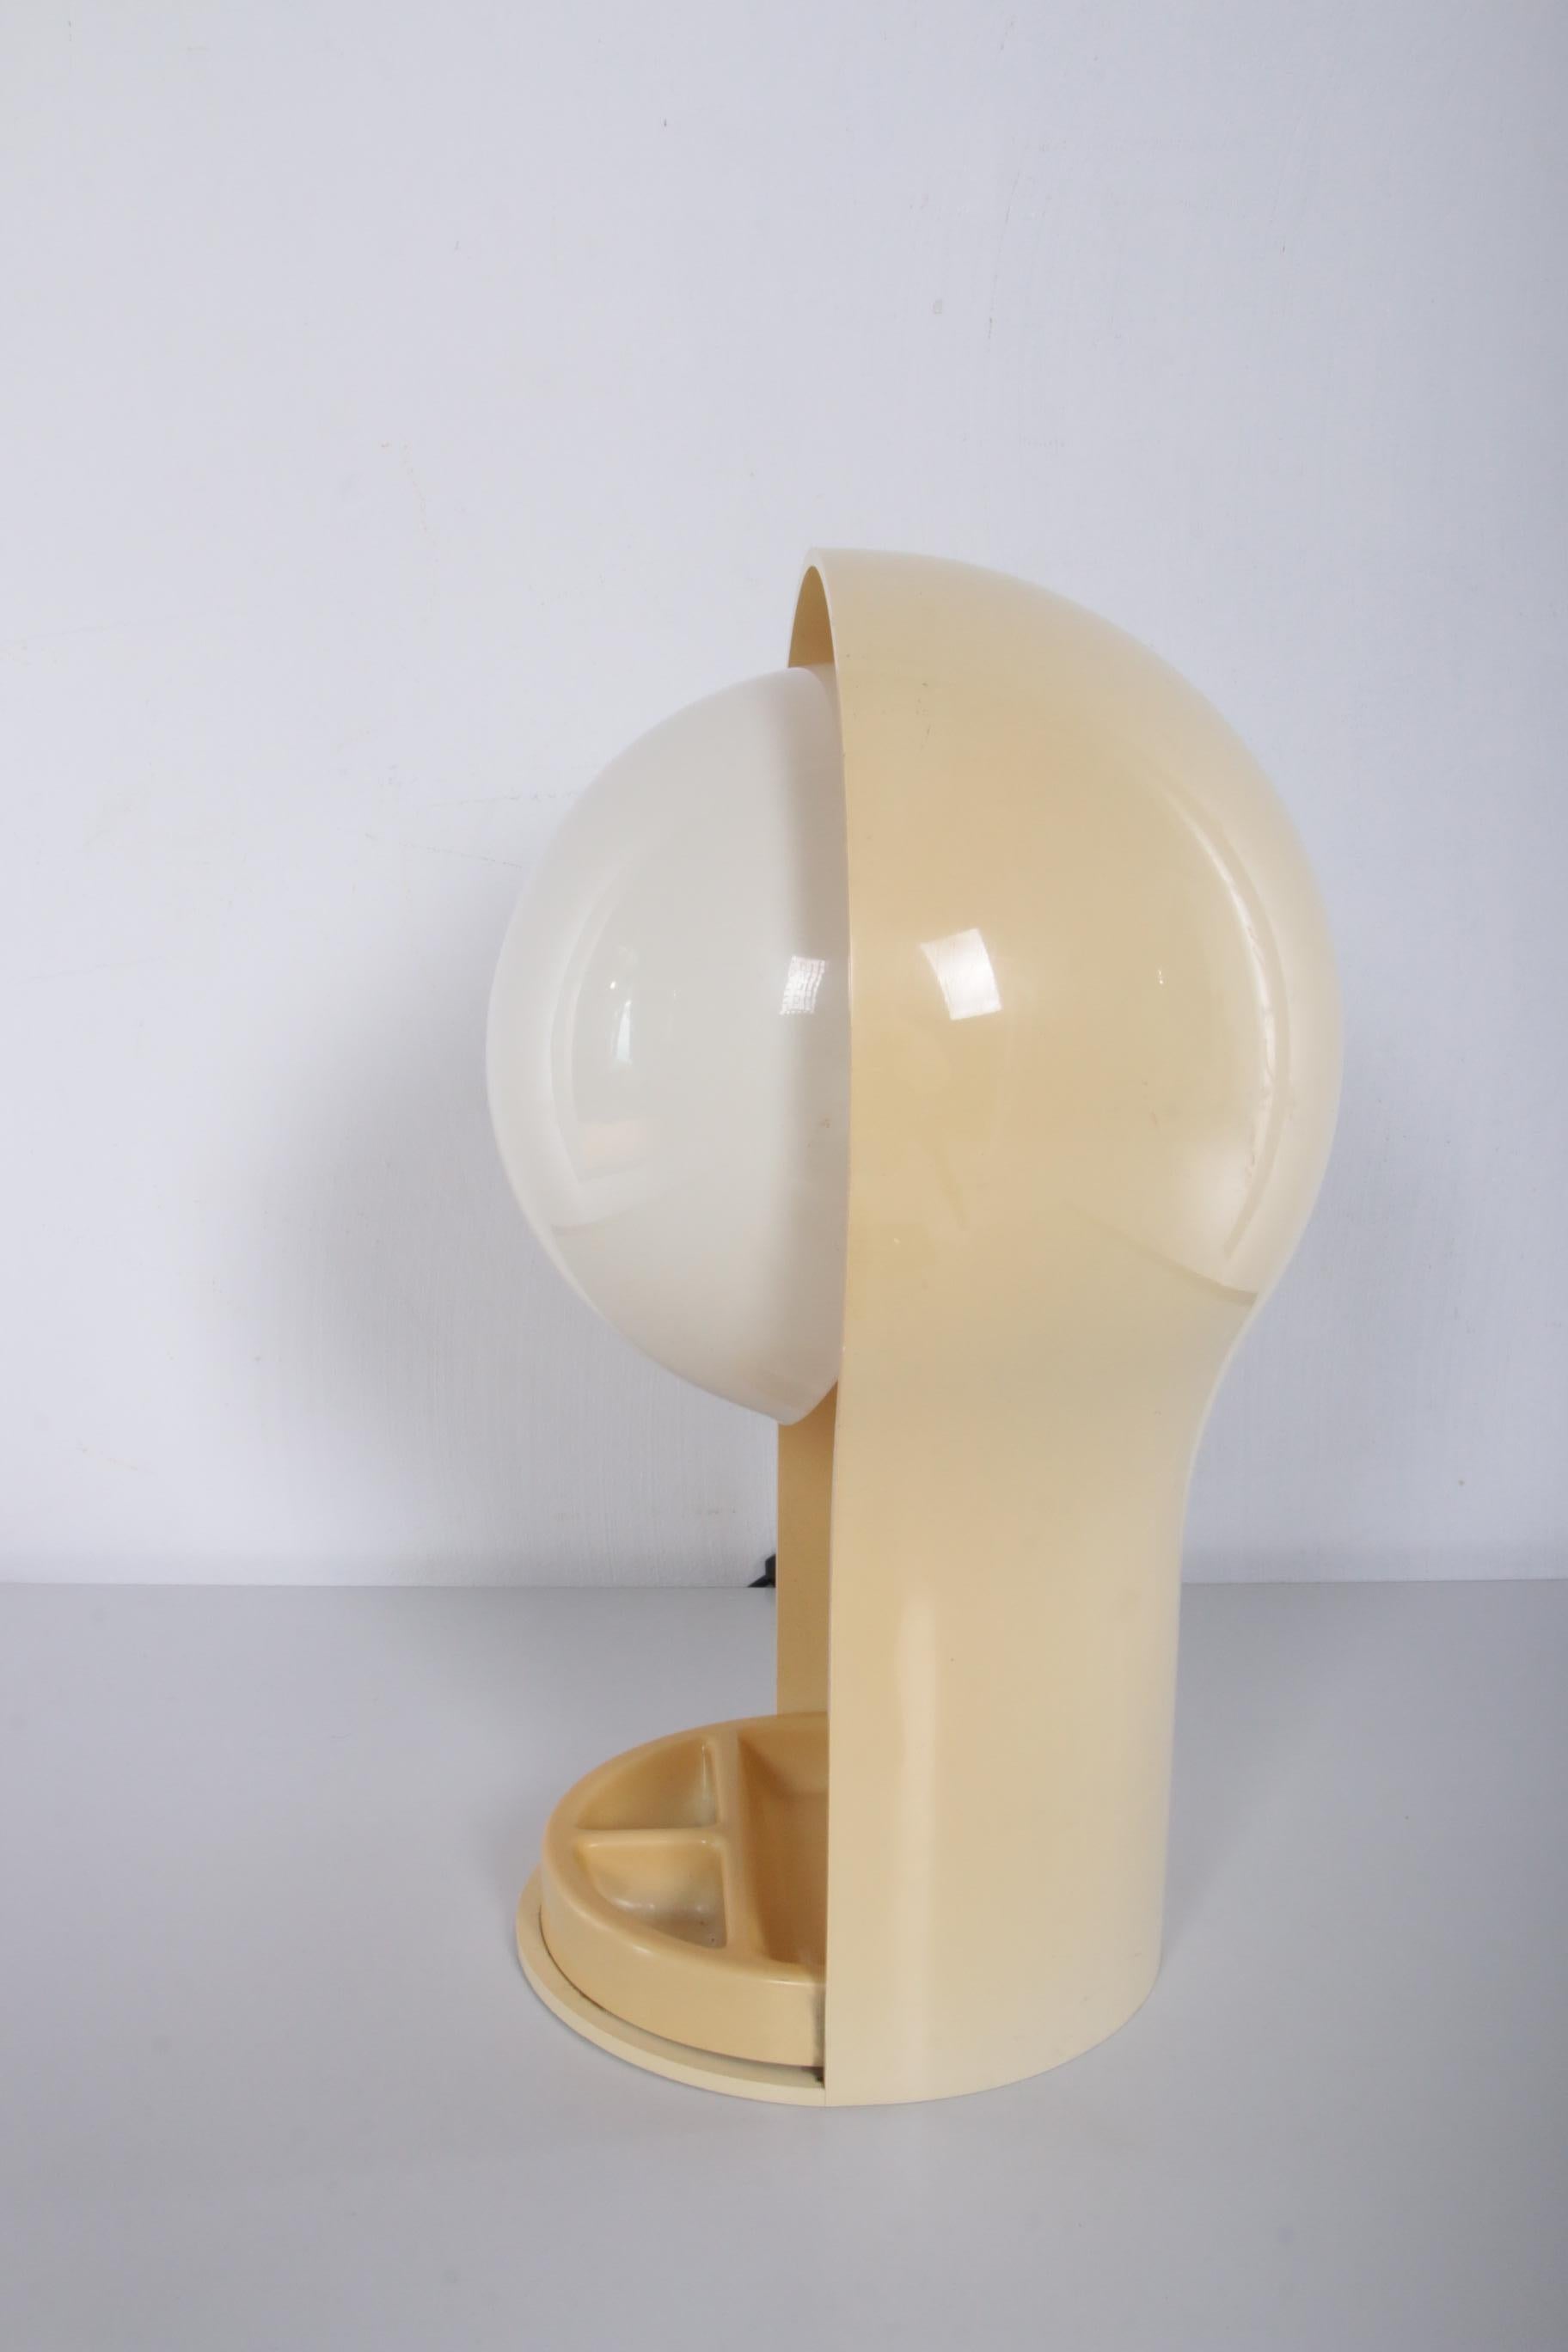 Plastic Vico Magistretti Desk Lamp Model Telegono Made by Artemide, 1960s Italy